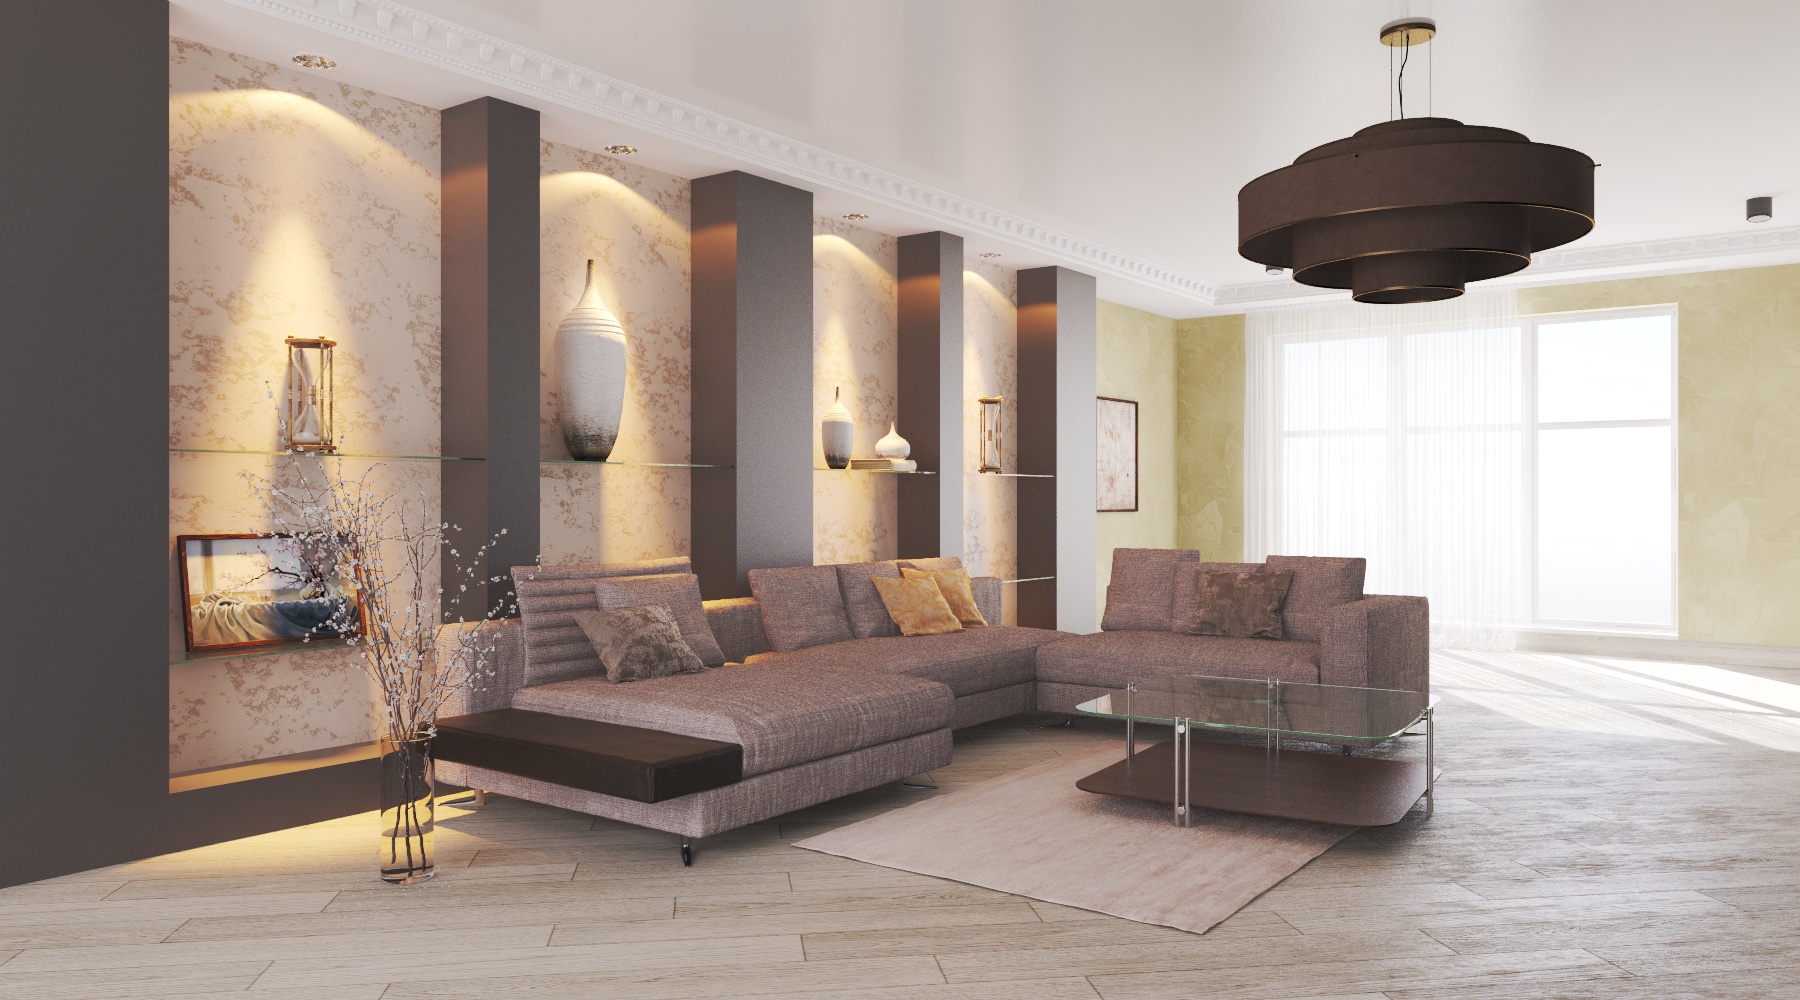 Modern oturma odası in 3d max vray 3.0 resim